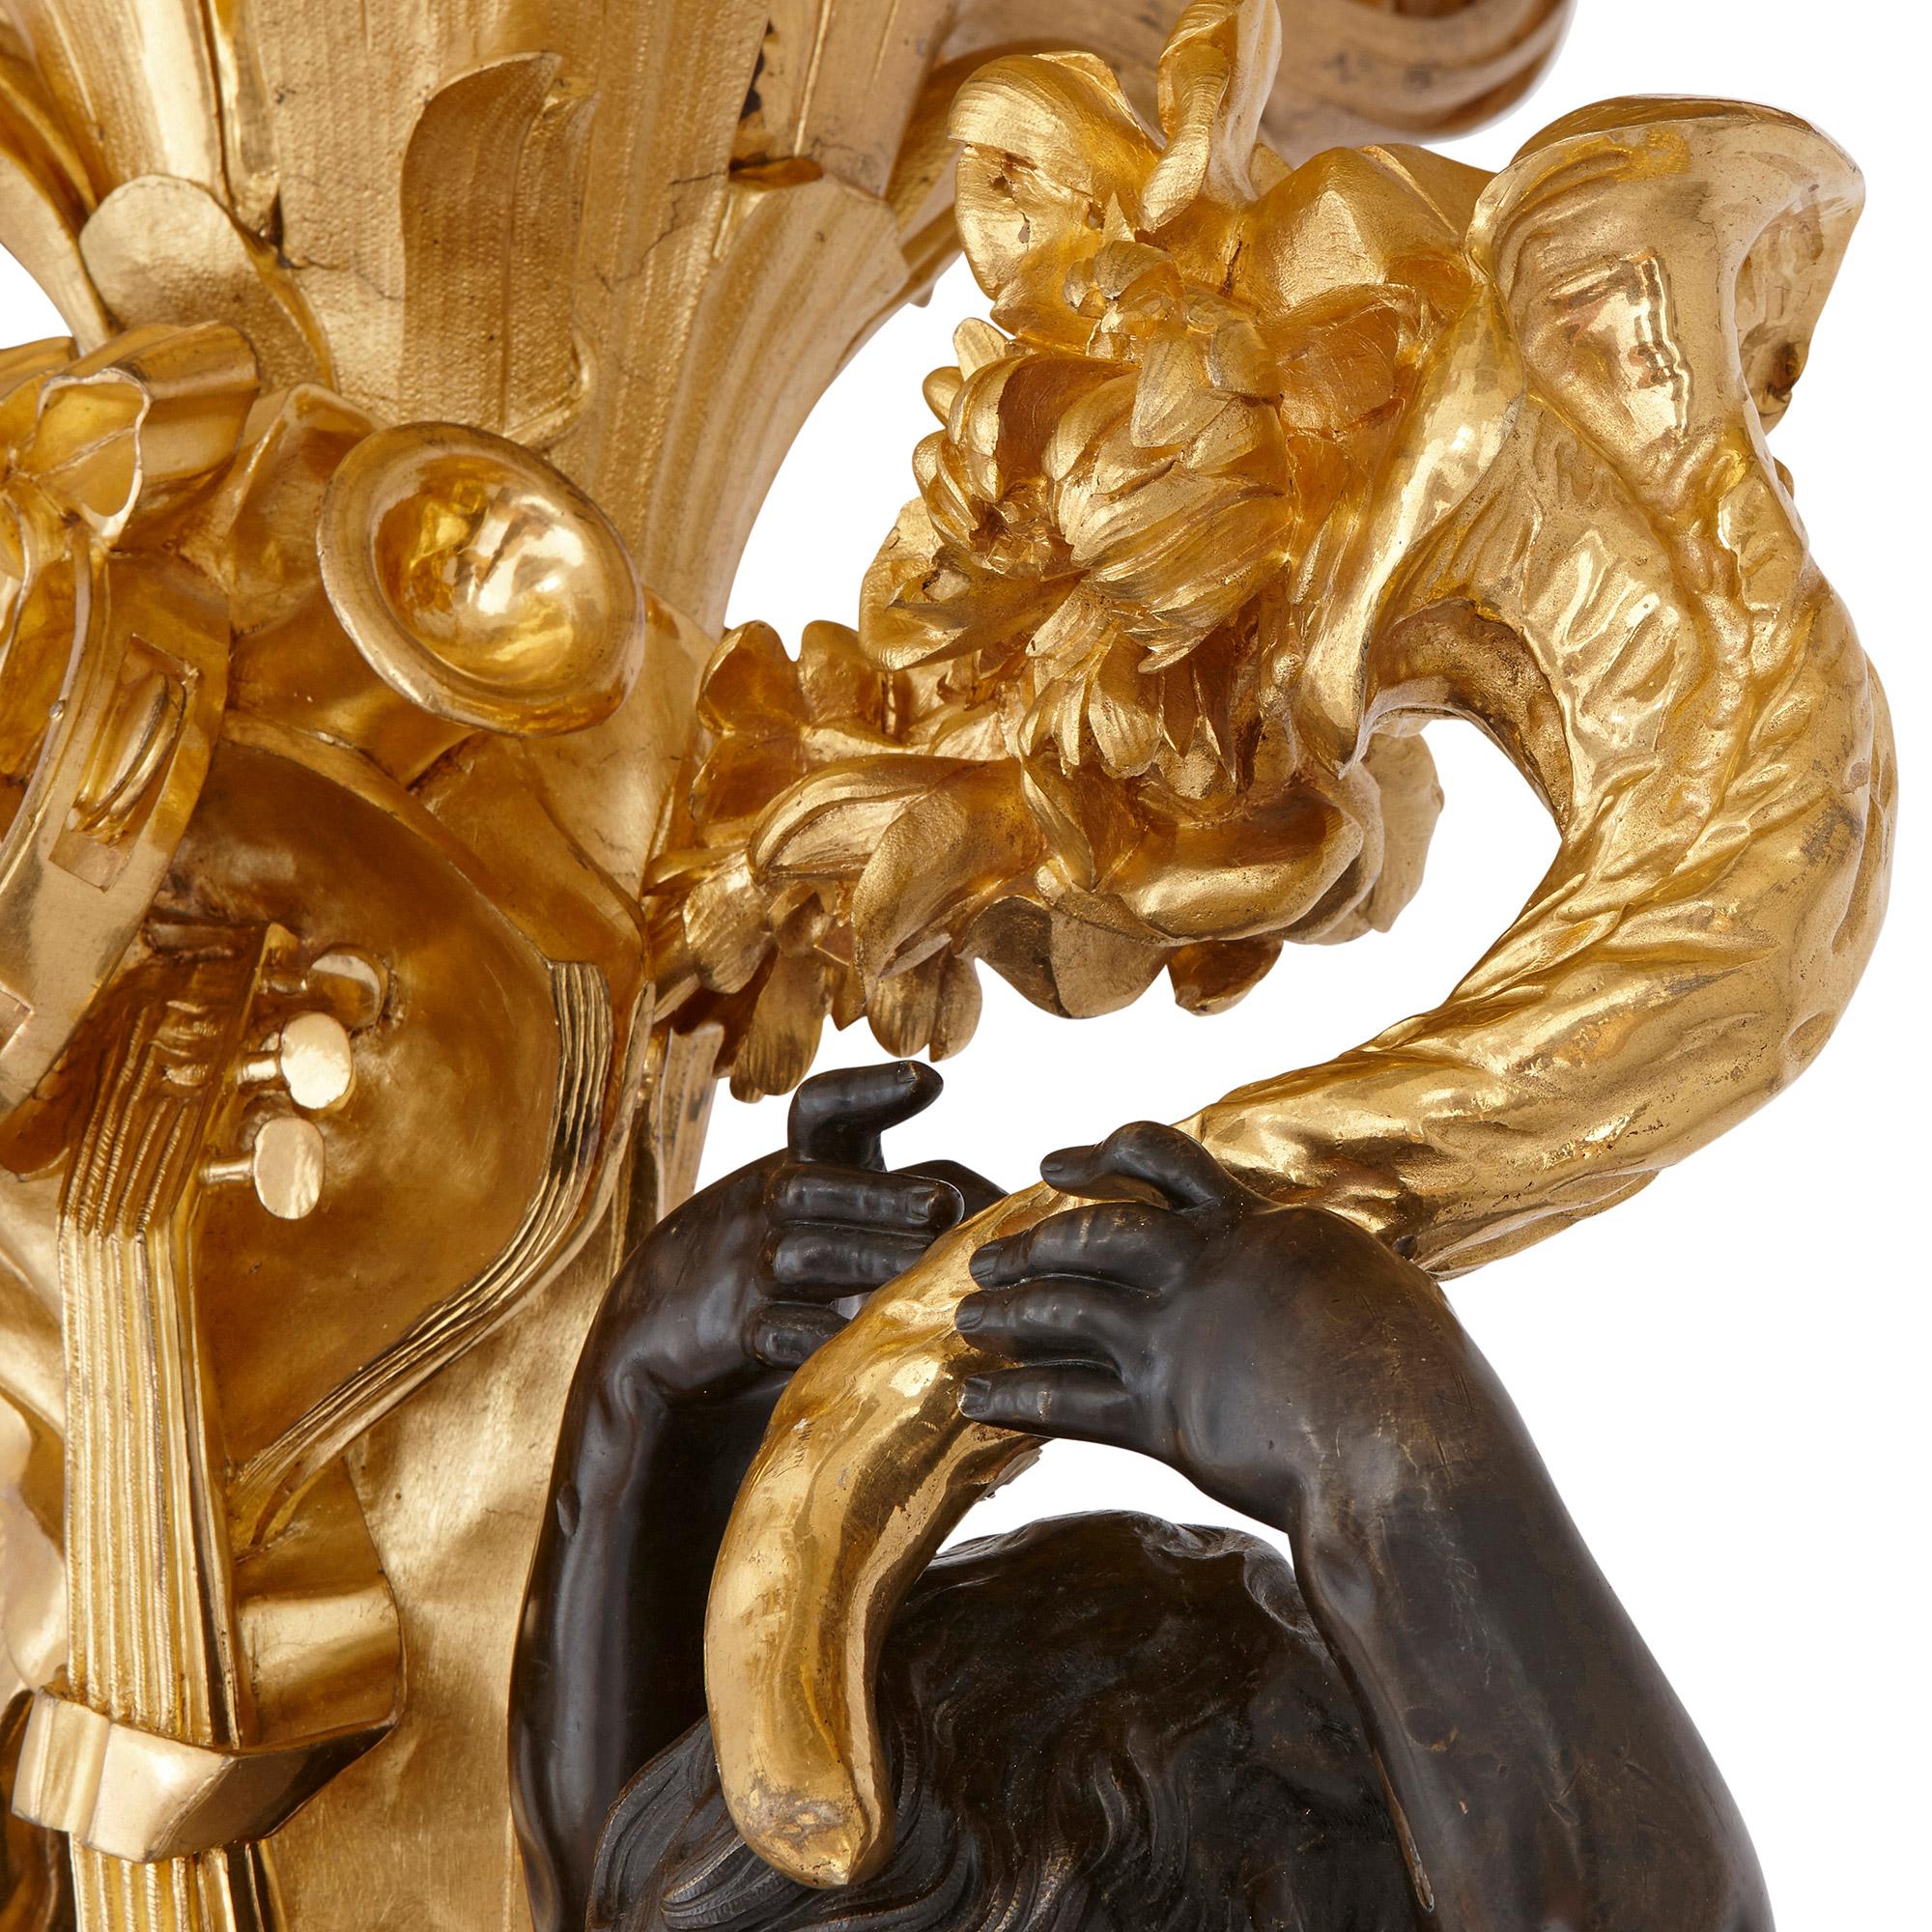 Monumentaler Kandelaber aus vergoldeter und patinierter Bronze von Beurdeley
Französisch, Ende 19. Jahrhundert
Maße: Höhe 273cm, Breite 90cm, Tiefe 90cm

Dieses opulente, monumentale Kandelaberpaar von Beurdeley zeigt das künstlerische und